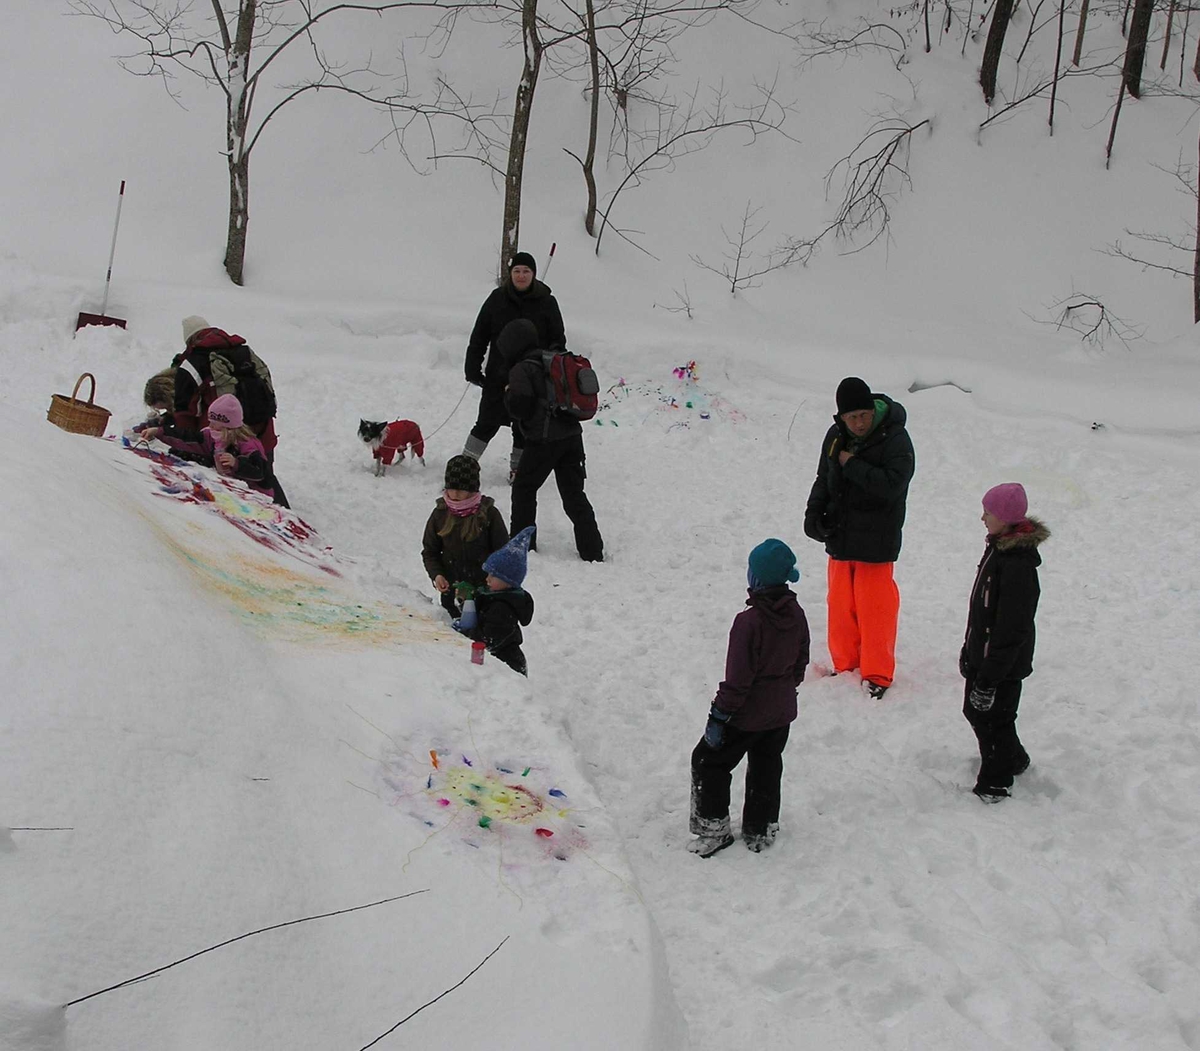 Barnasdag på Berg, vinterferien 25.02.2010.
Barn får høre om Munch, lage kunst i snøen og spise polser.